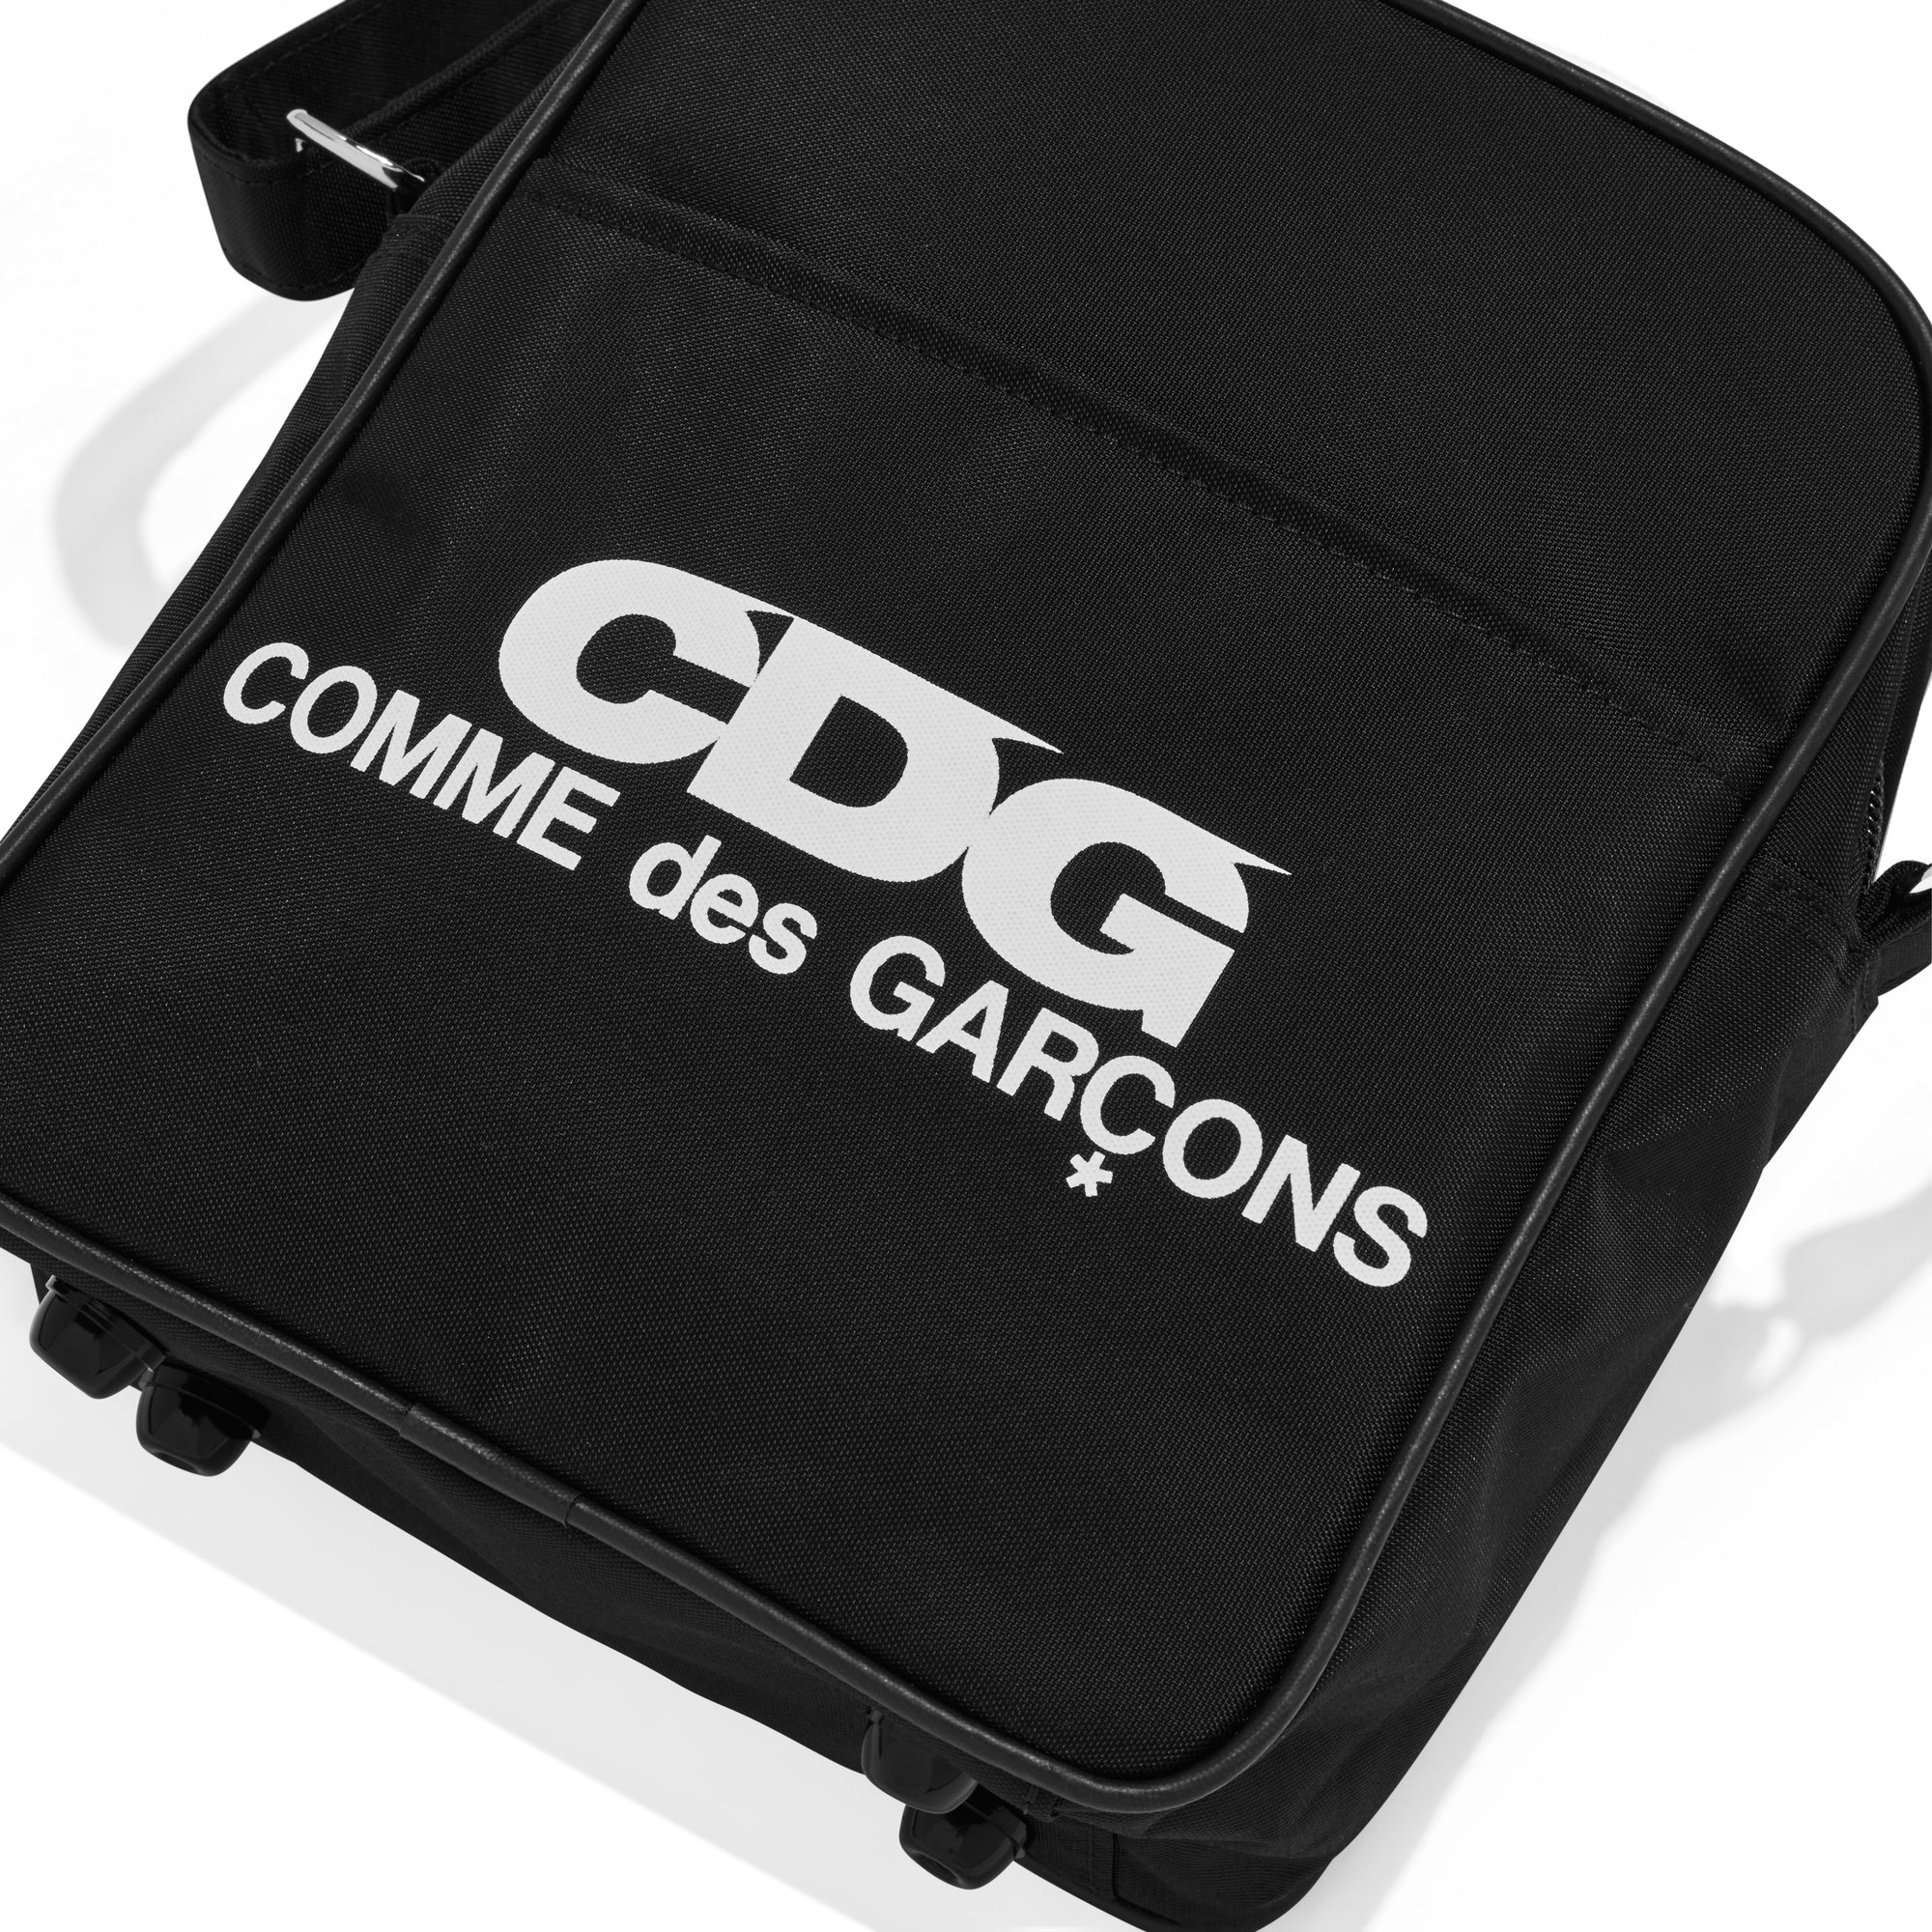 CDG - Large Shoulder Bag - (Black) view 3